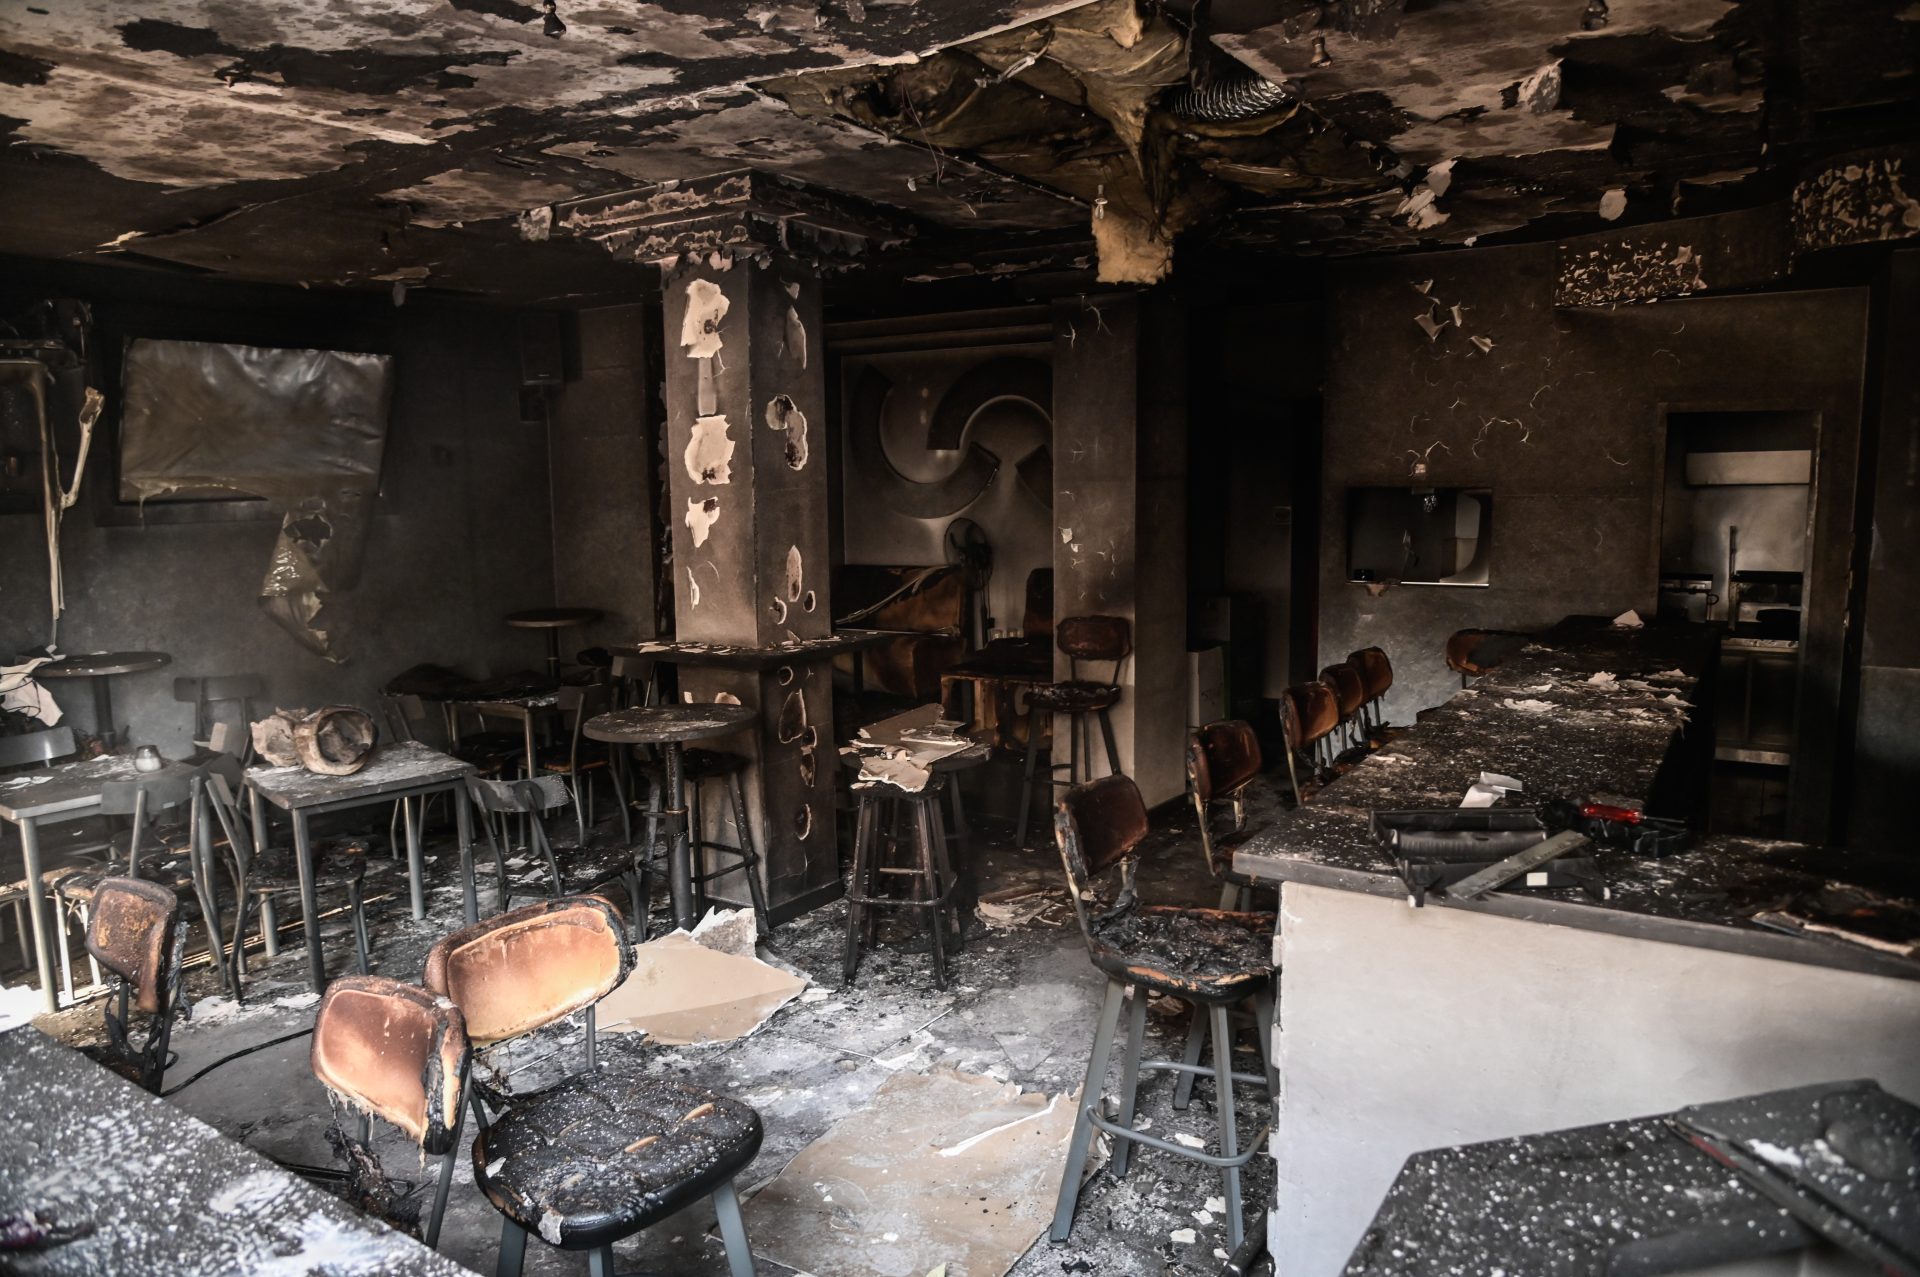 Έκρηξη τα ξημερώματα σε καφετέρια στο Περιστέρι. Προκλήθηκαν σοβαρές υλικές ζημιές